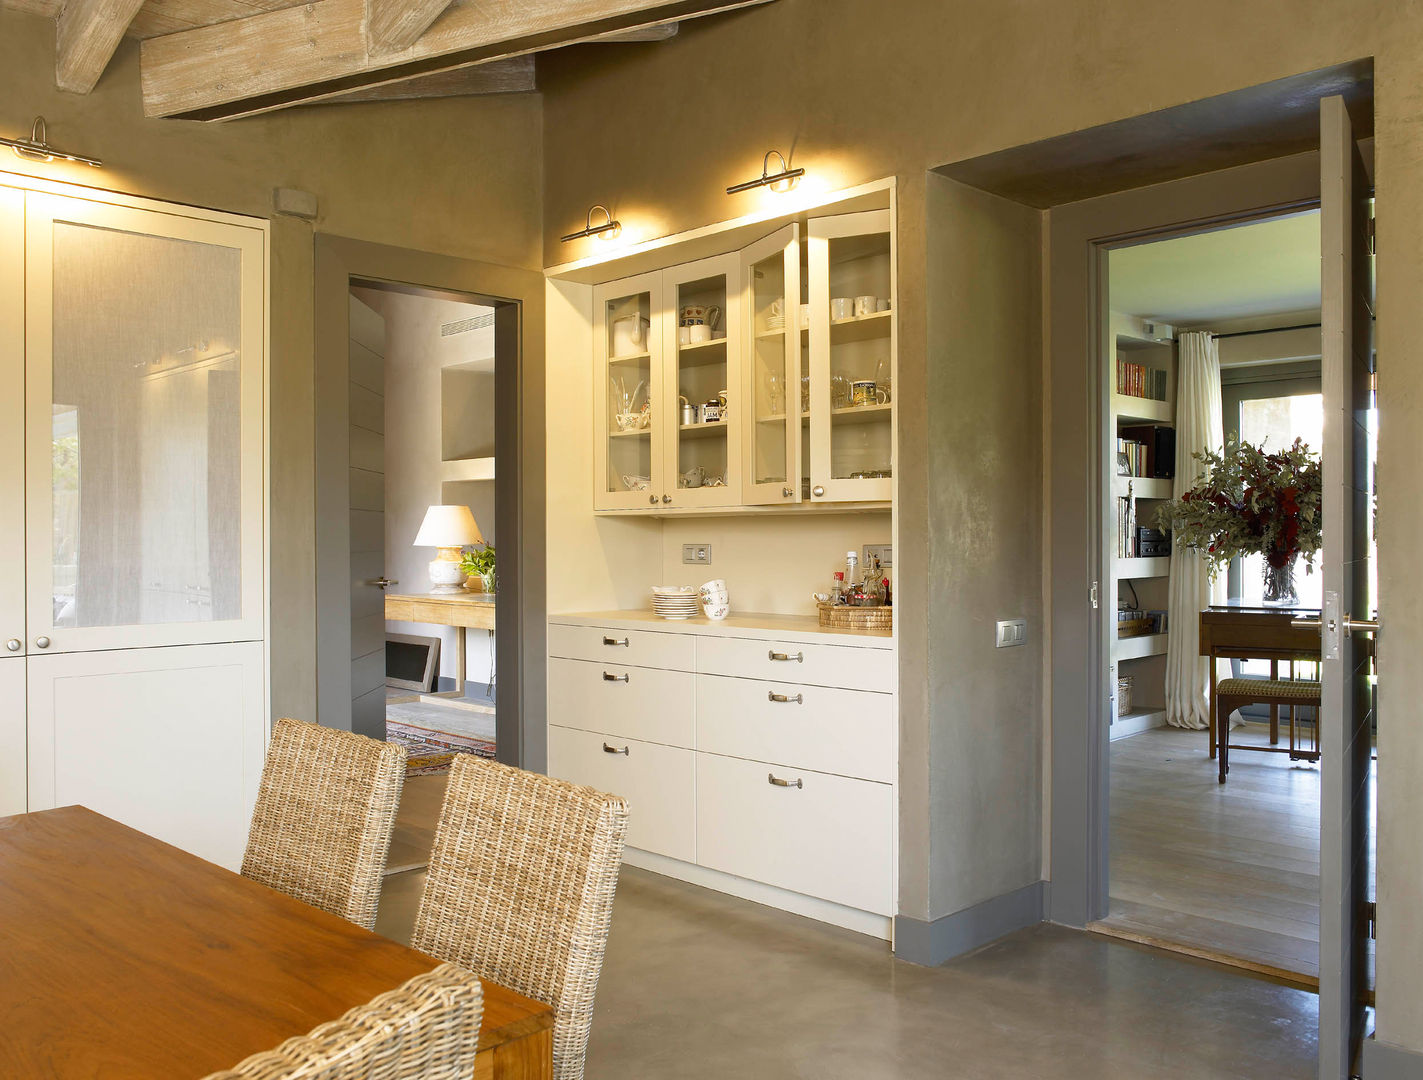 Mueble para los desayunos DEULONDER arquitectura domestica Cocinas de estilo rústico cocina,deulonder,office,desayuno,vitrina,cajonera